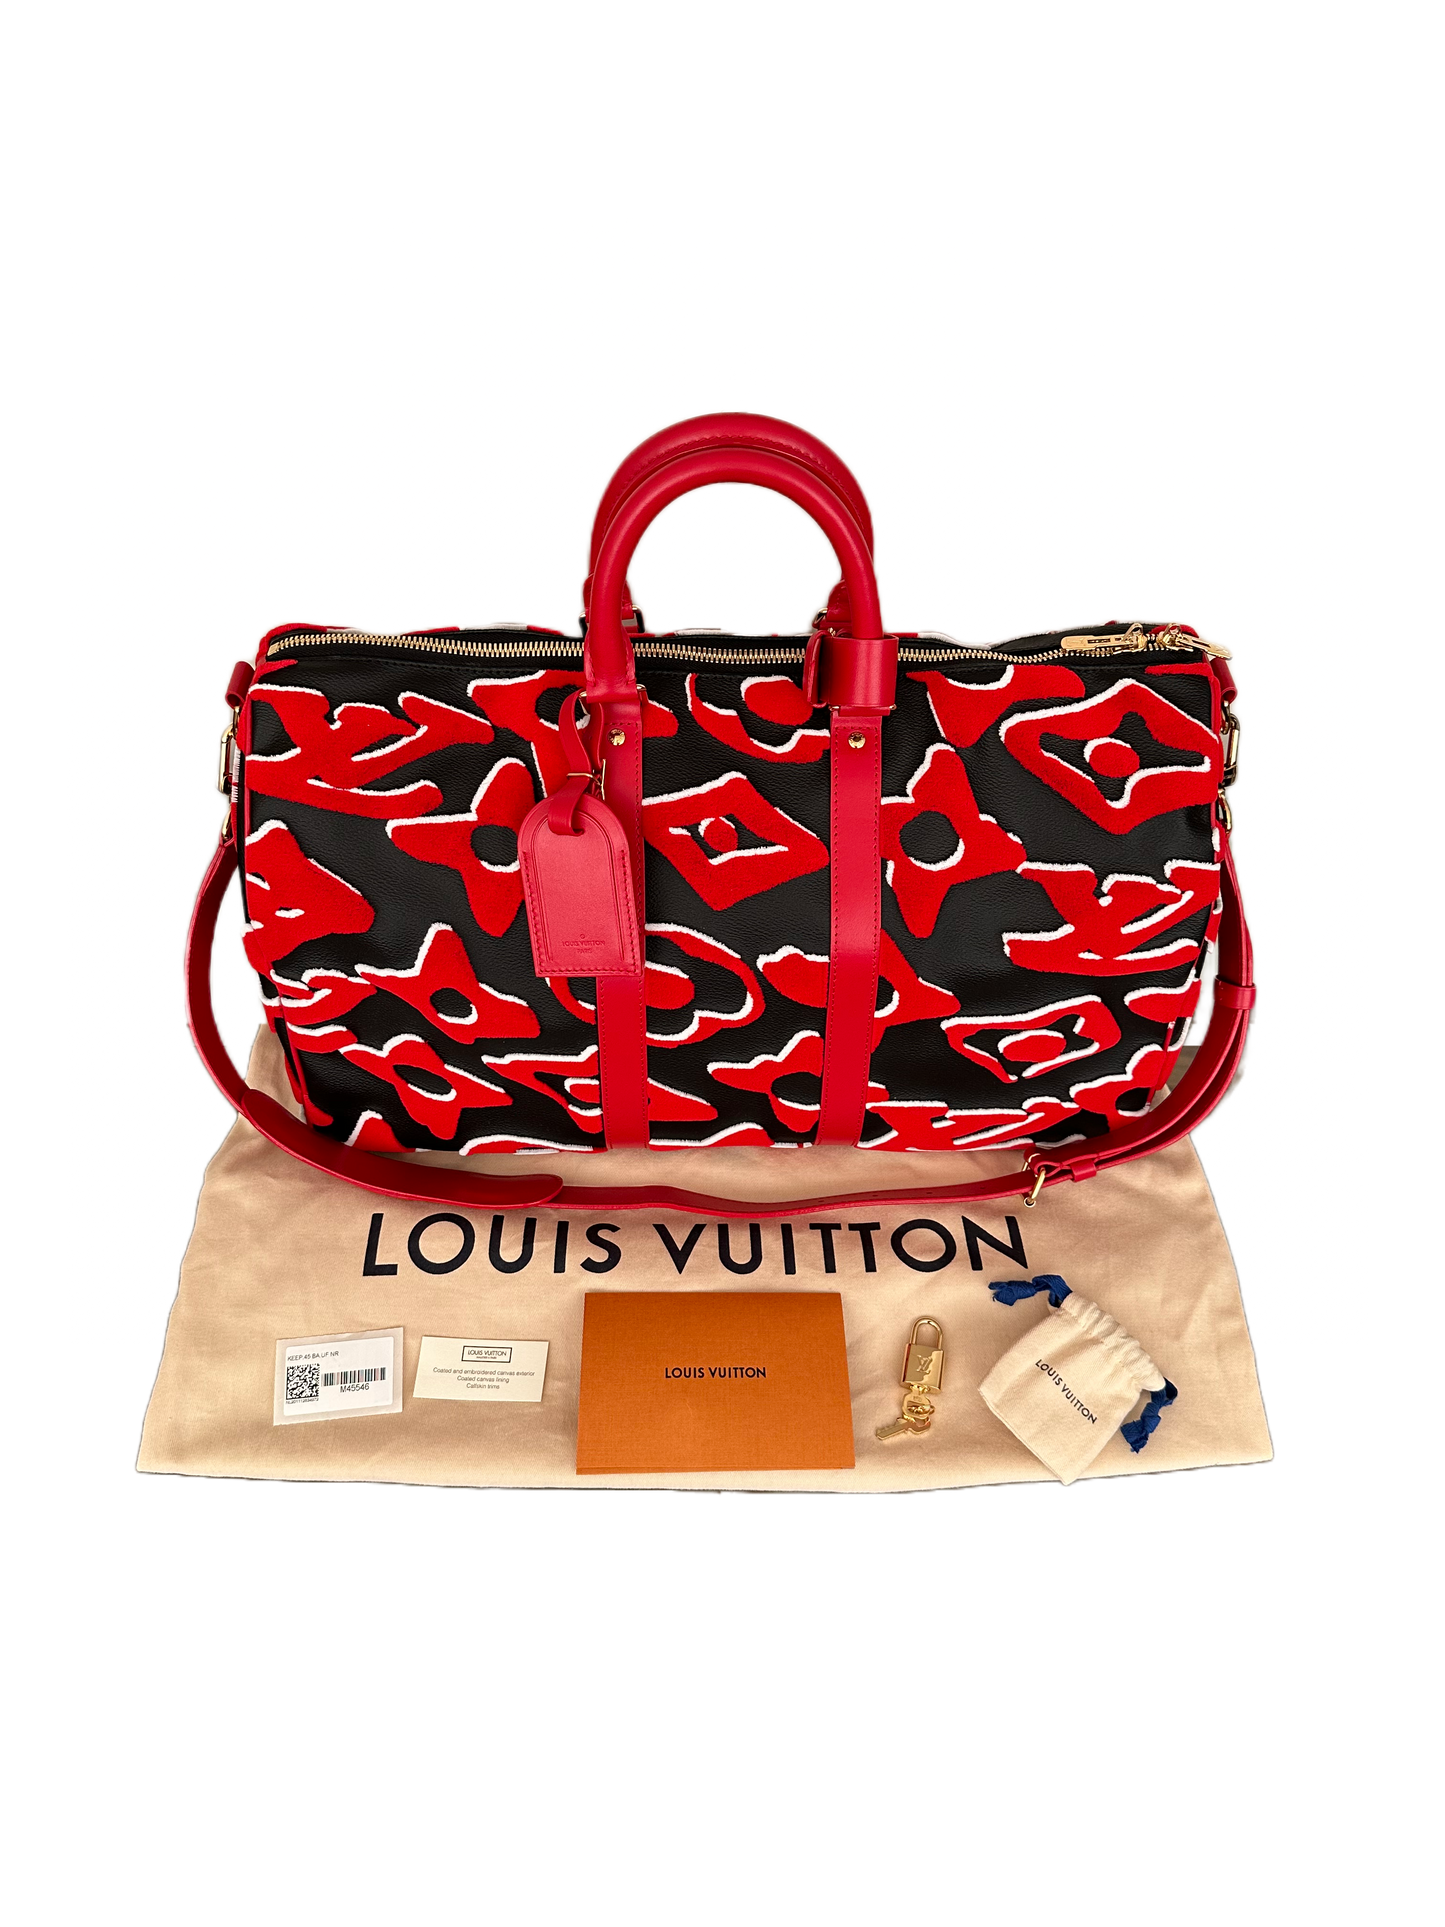 Louis Vuitton x Urs Fischer Tufted Pochette Accessoires